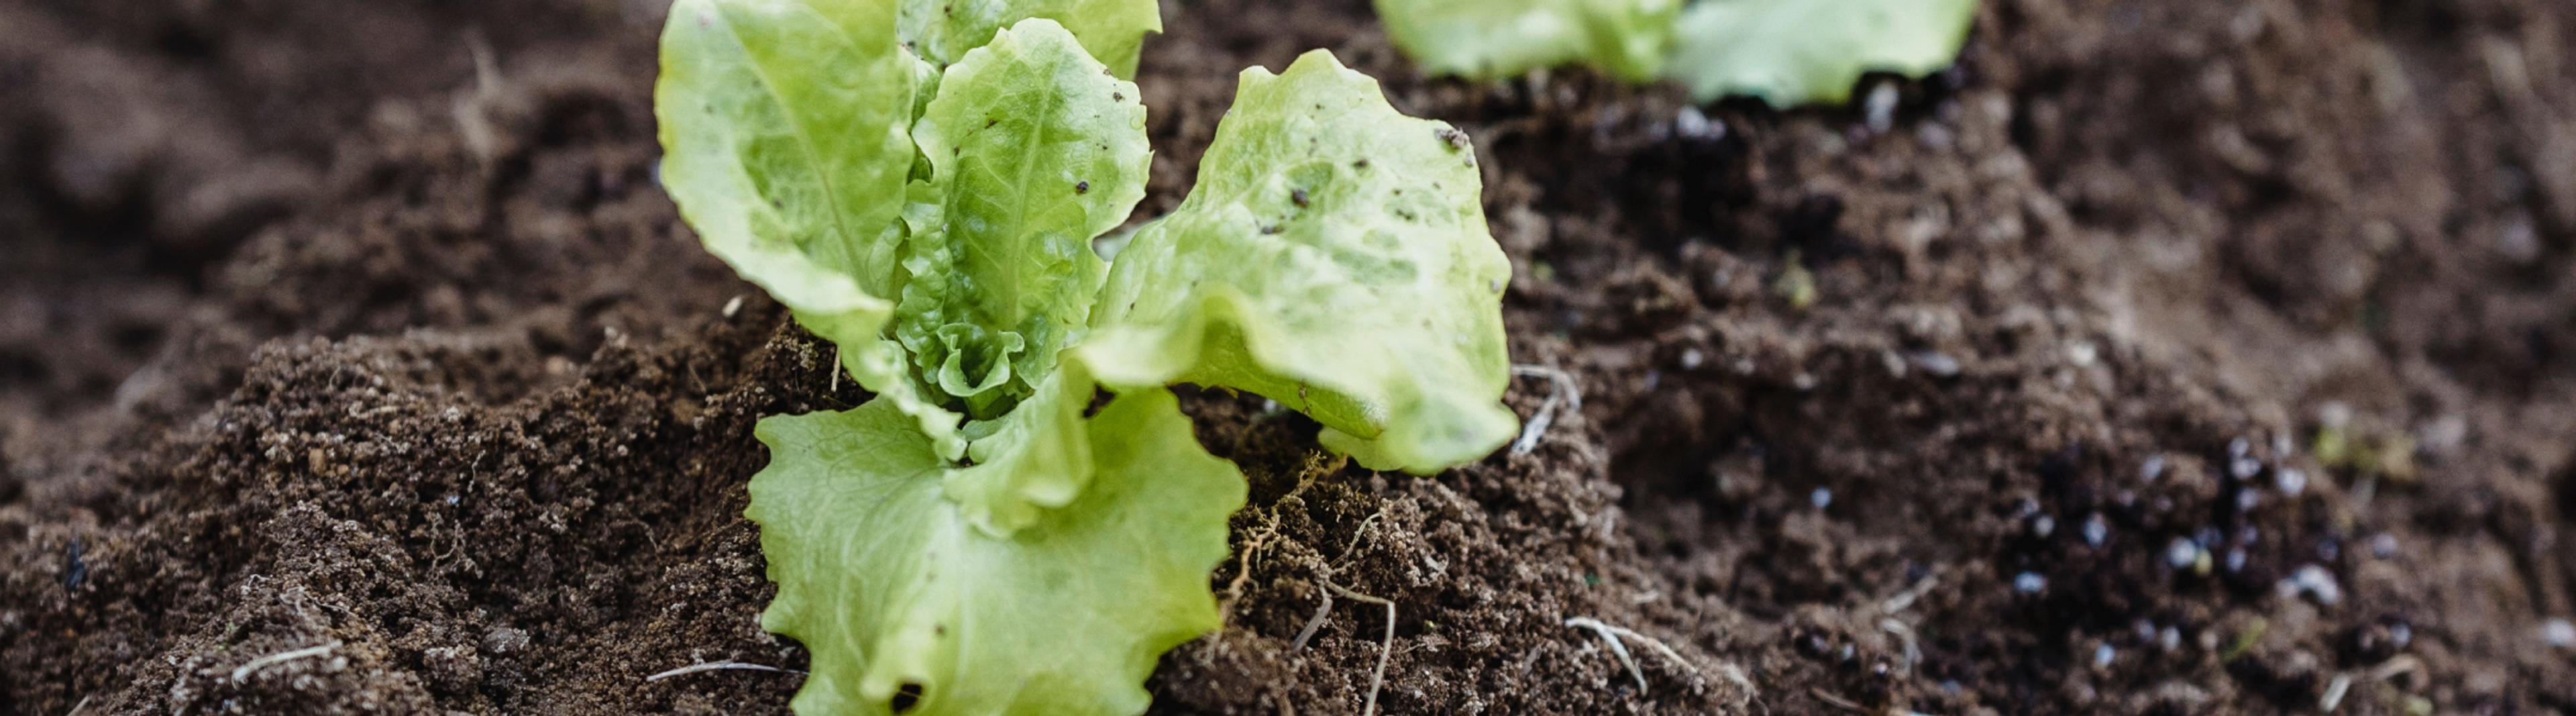 A lettuce growing in soil.